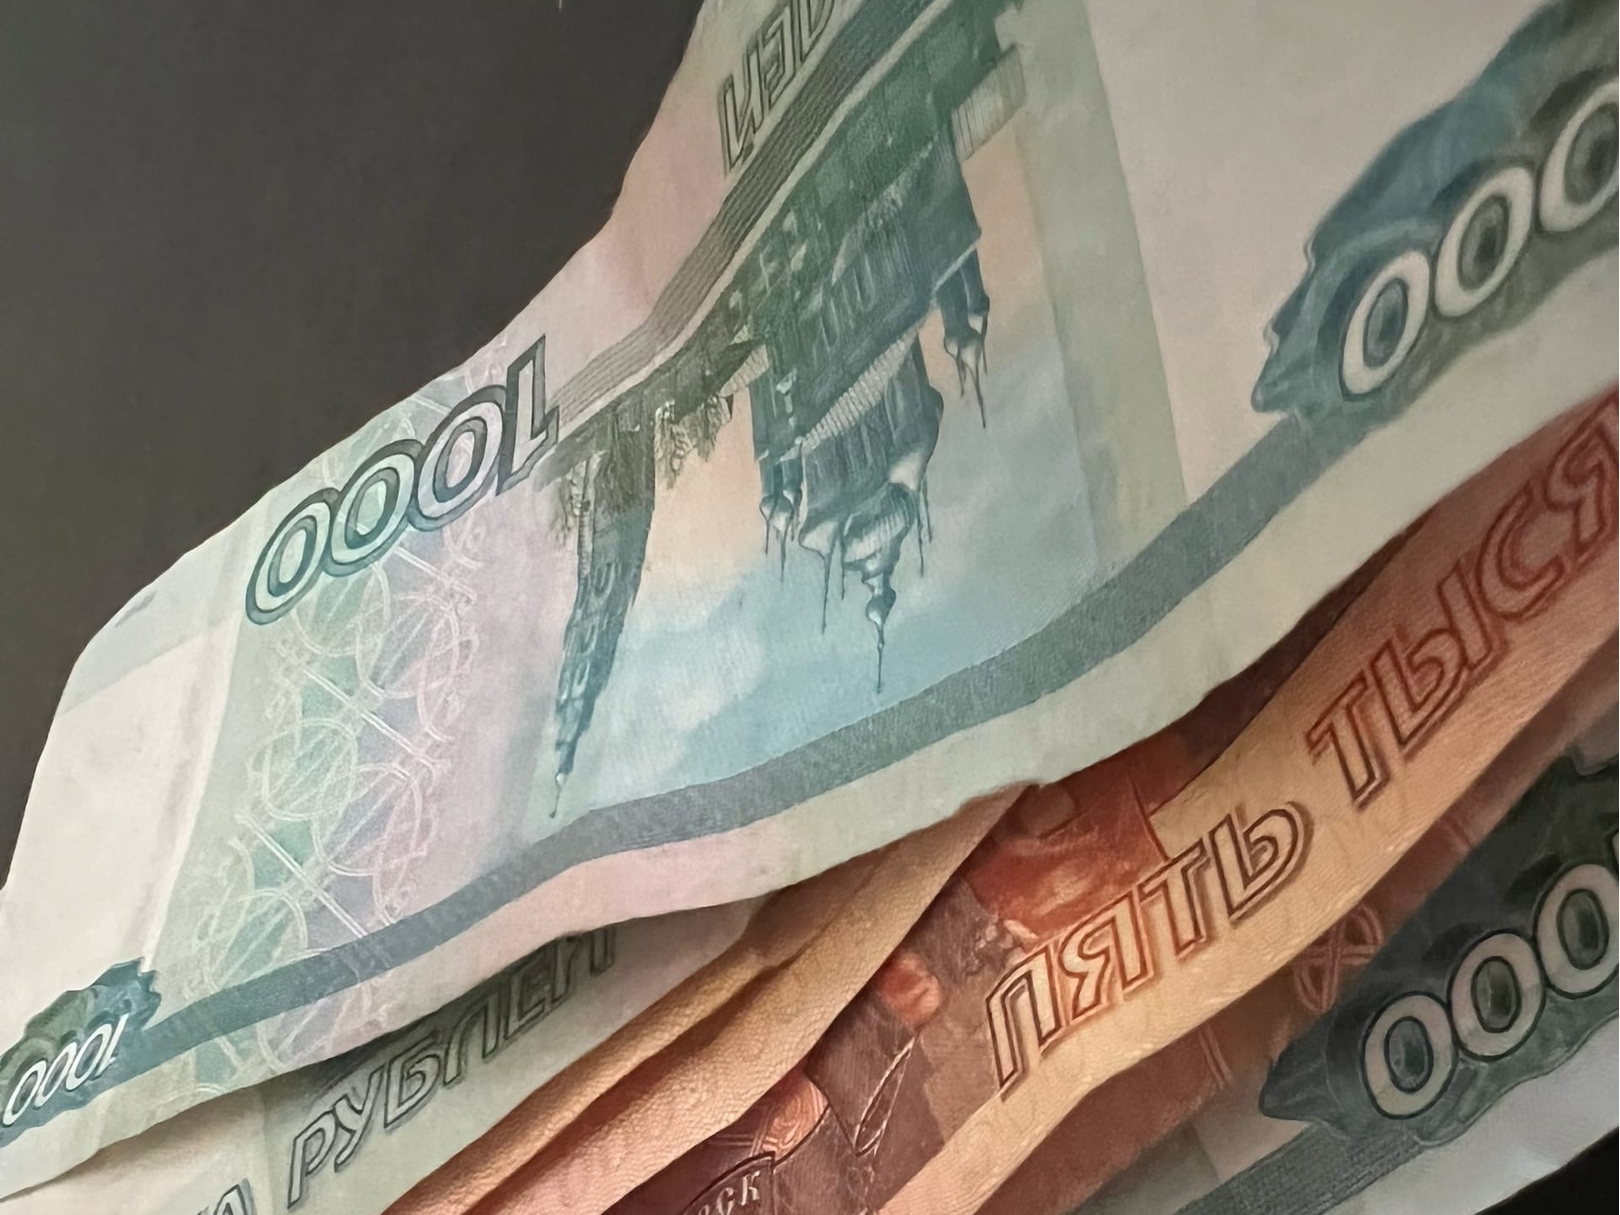 В Димитровграде продавец магазина похитил 70 тысяч рублей из кассы, чтобы возместить потраченные на ставках деньги